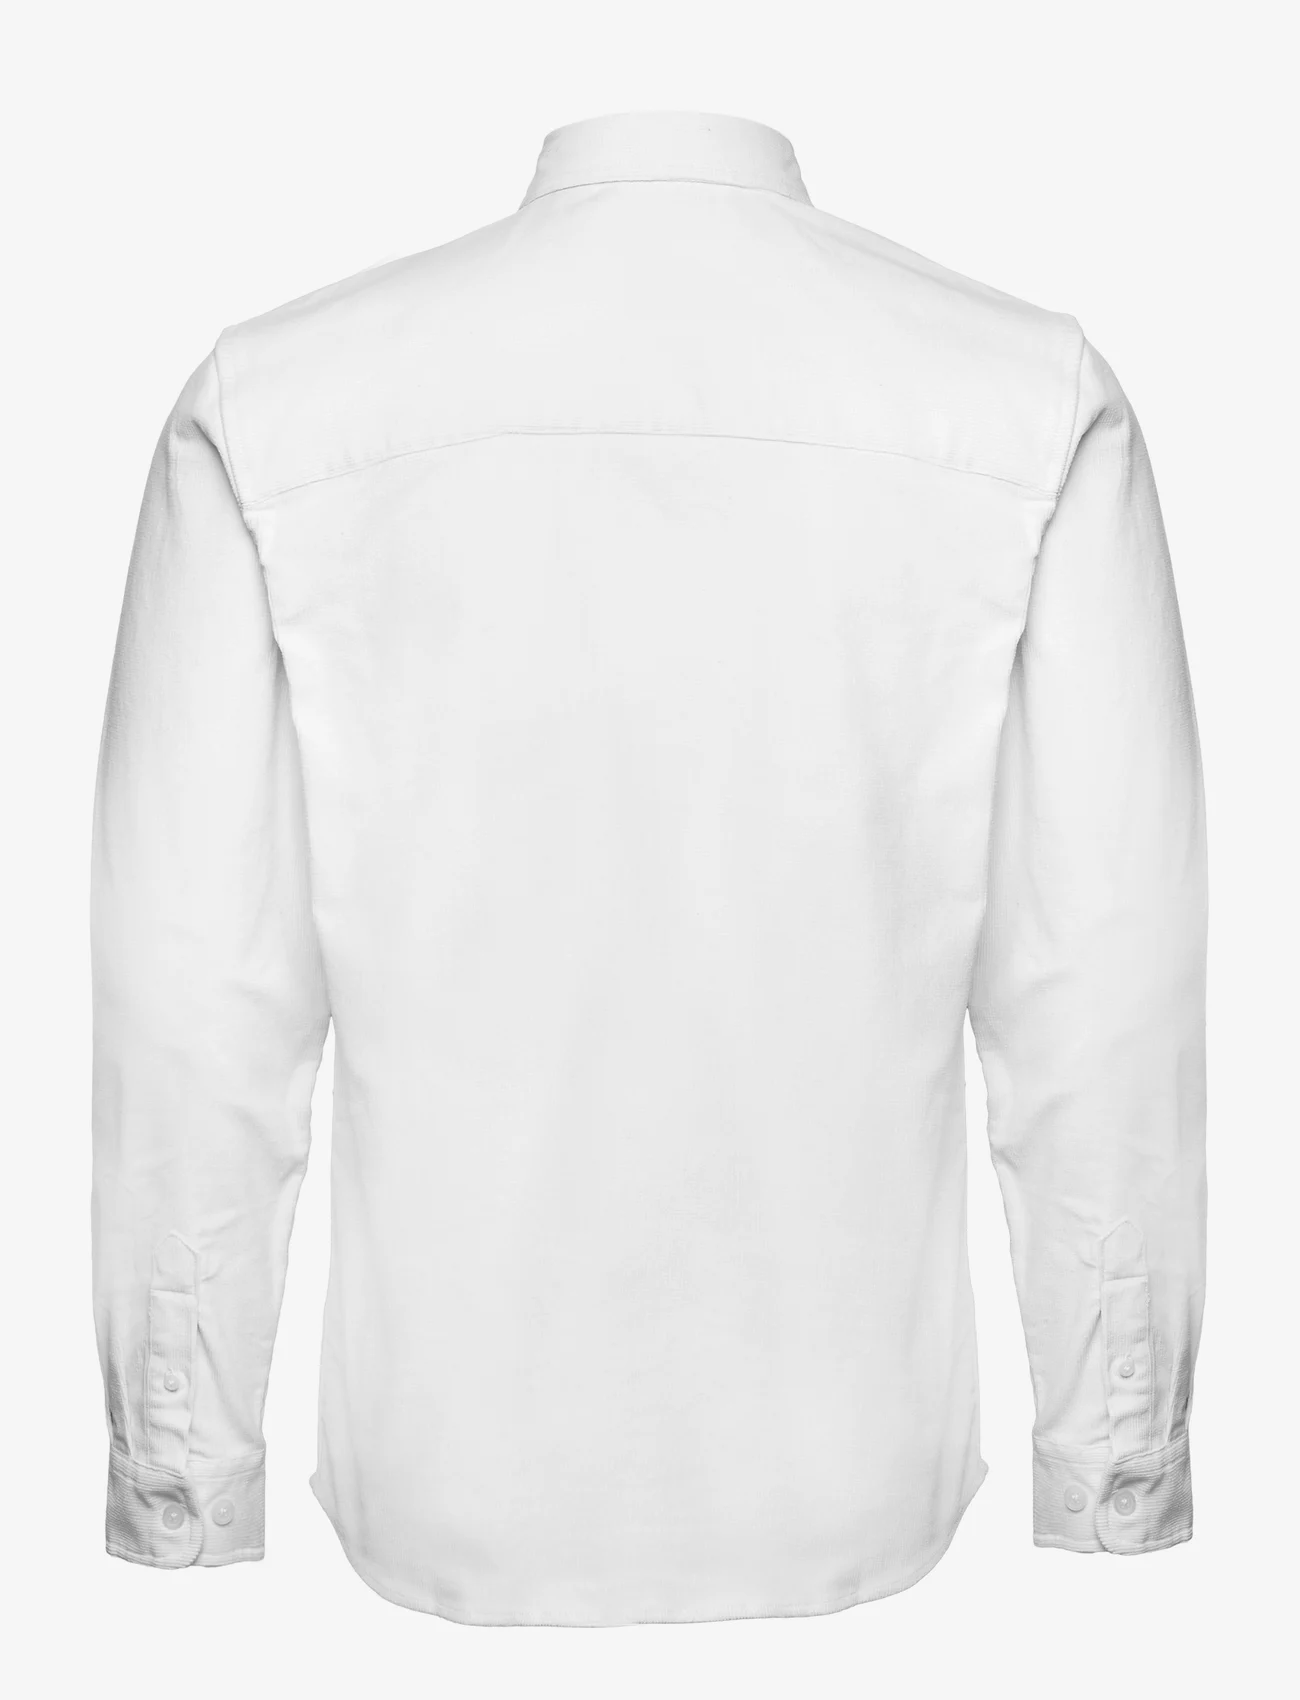 Redefined Rebel - RRPark Shirt - mažiausios kainos - white - 1